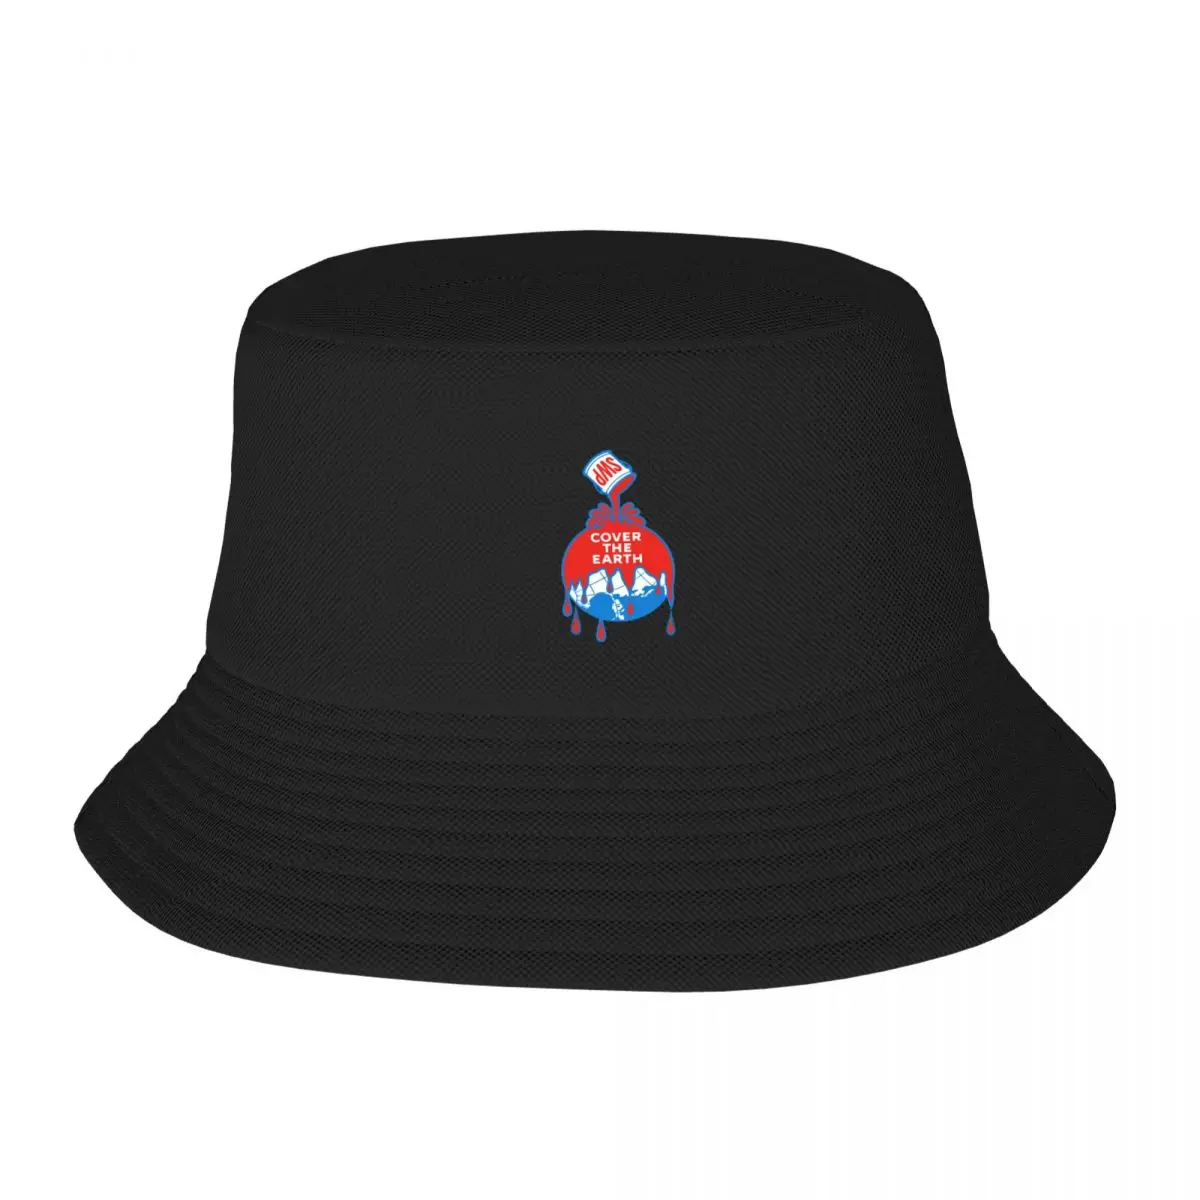 Тениска Sherwin williams cover the earth essential цвят, широка шапка, Солнцезащитная шапка, Аниме-шапка, Дизайнерски шапка, шапка на поръчка, Дамски Мъжки